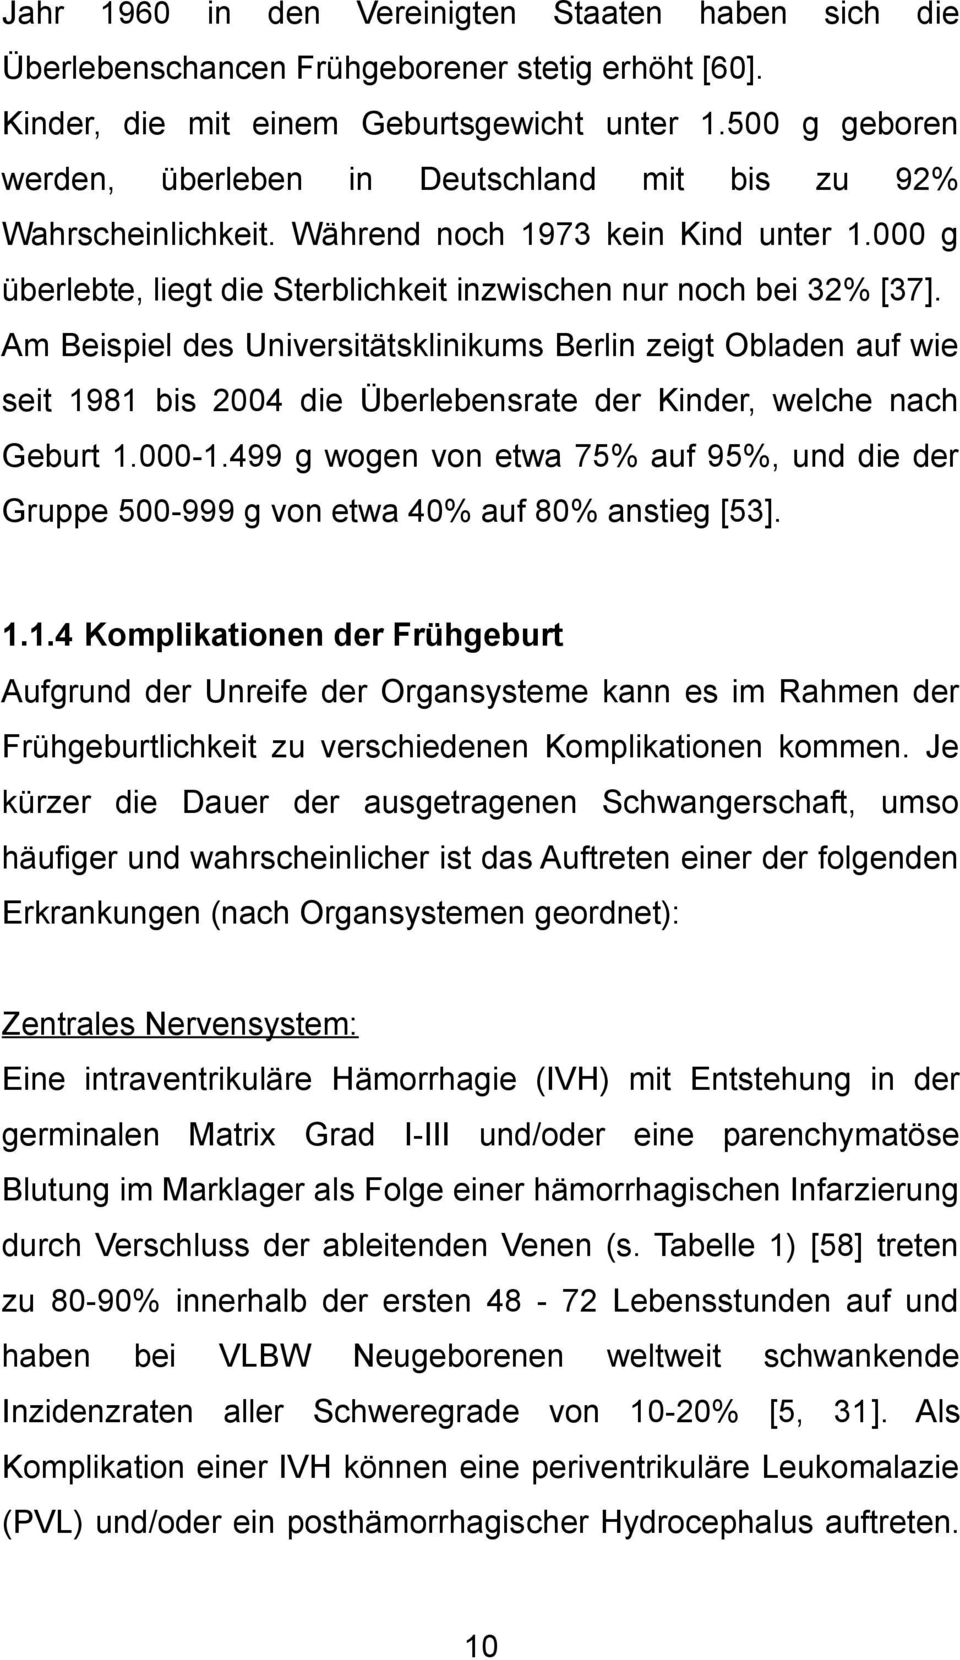 Am Beispiel des Universitätsklinikums Berlin zeigt Obladen auf wie seit 1981 bis 2004 die Überlebensrate der Kinder, welche nach Geburt 1.000-1.